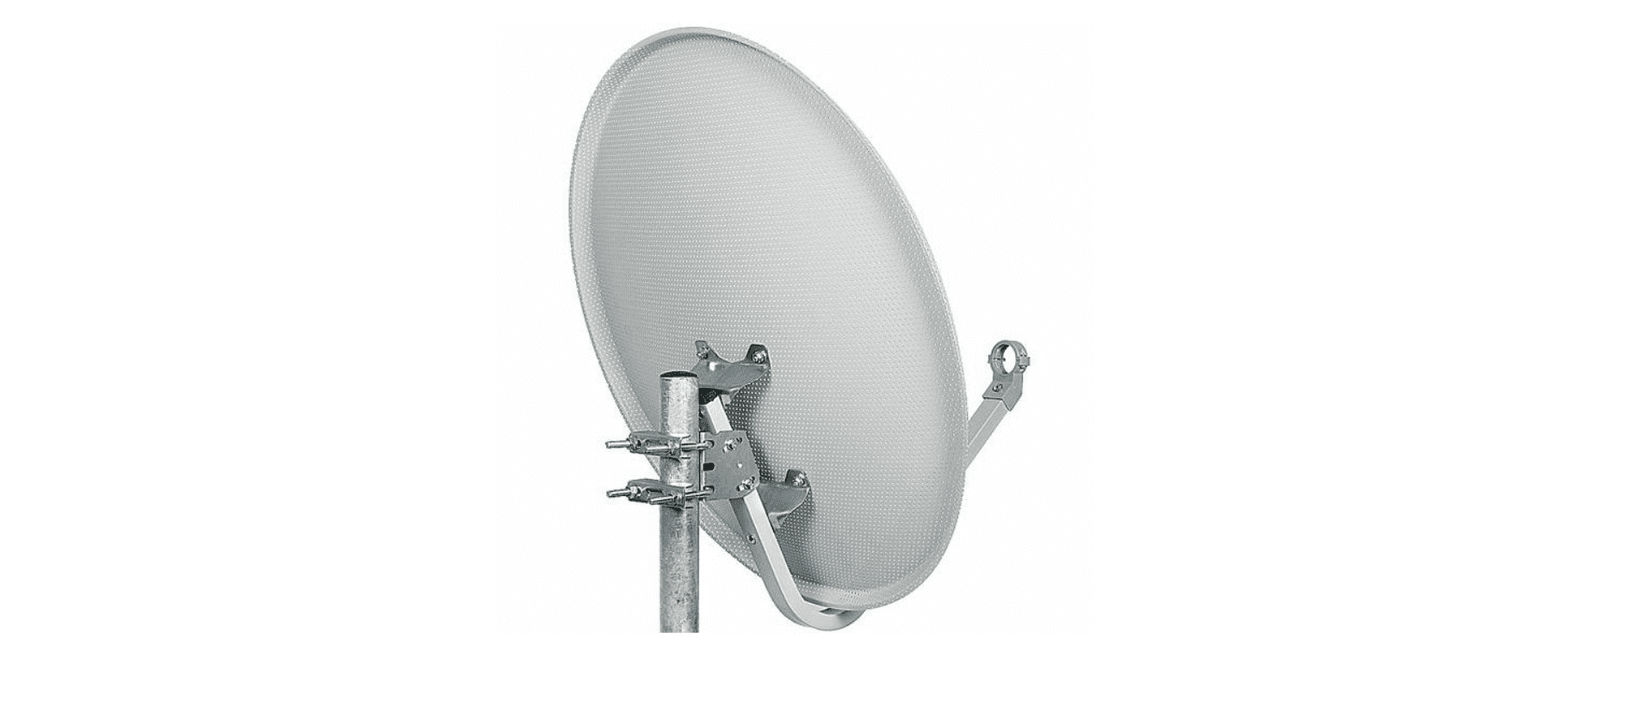 Selected image for FALCOM Satelitska antena šupljikava 97 cm MESH Triax srebrna